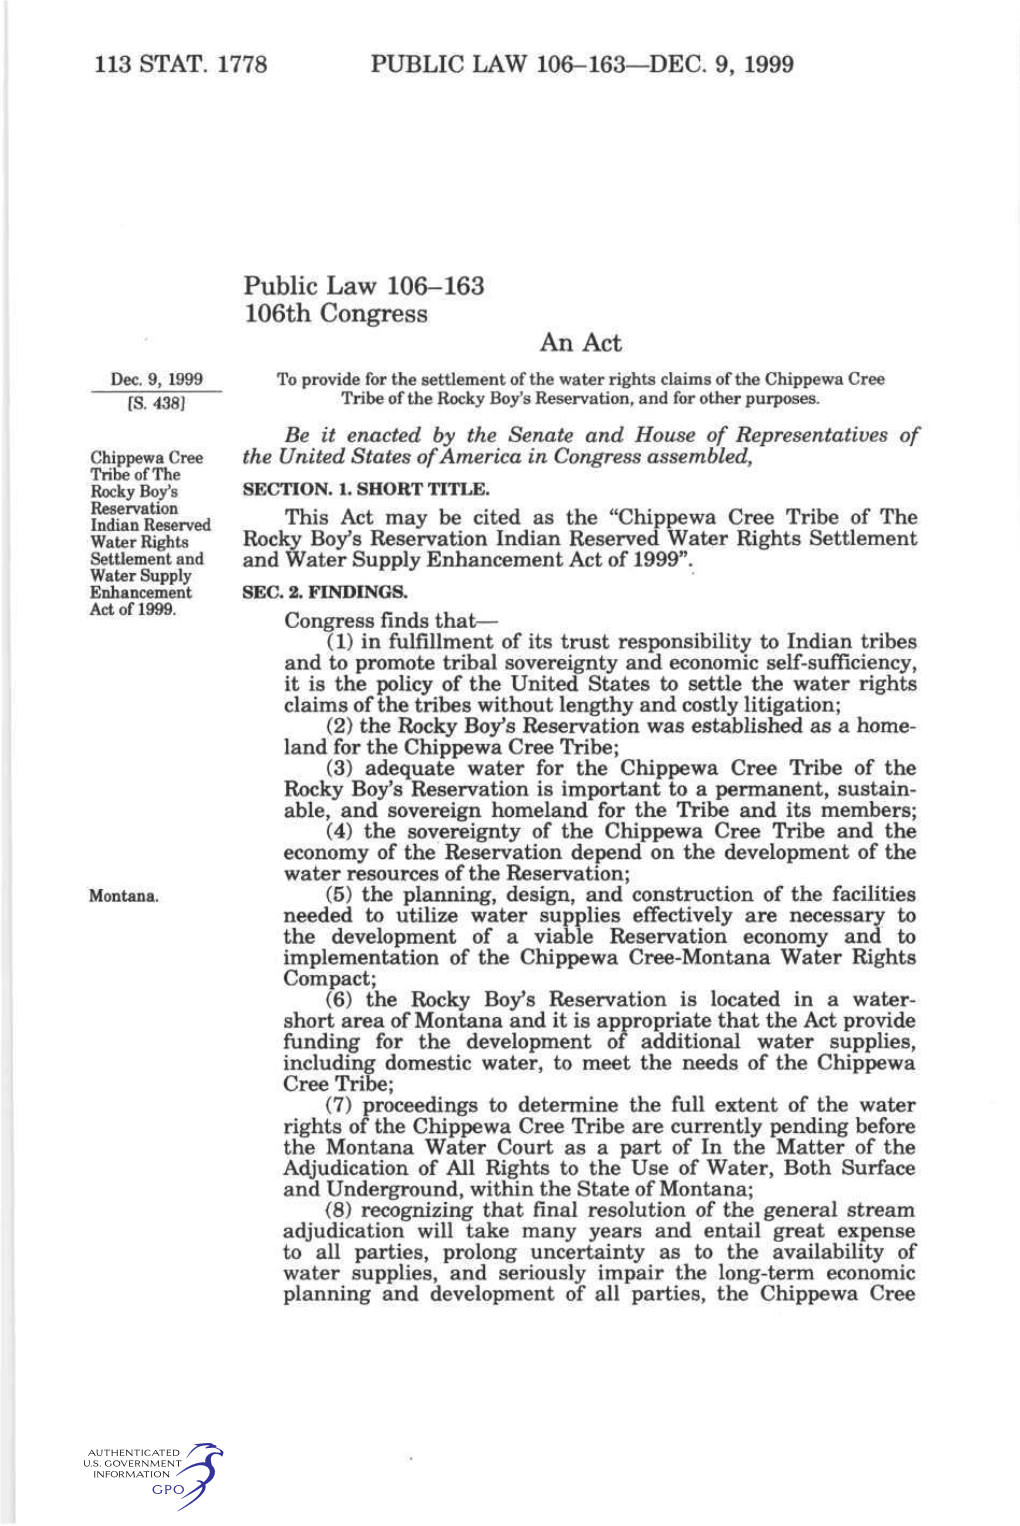 113 Stat. 1778 Public Law 106-163—Dec. 9, 1999